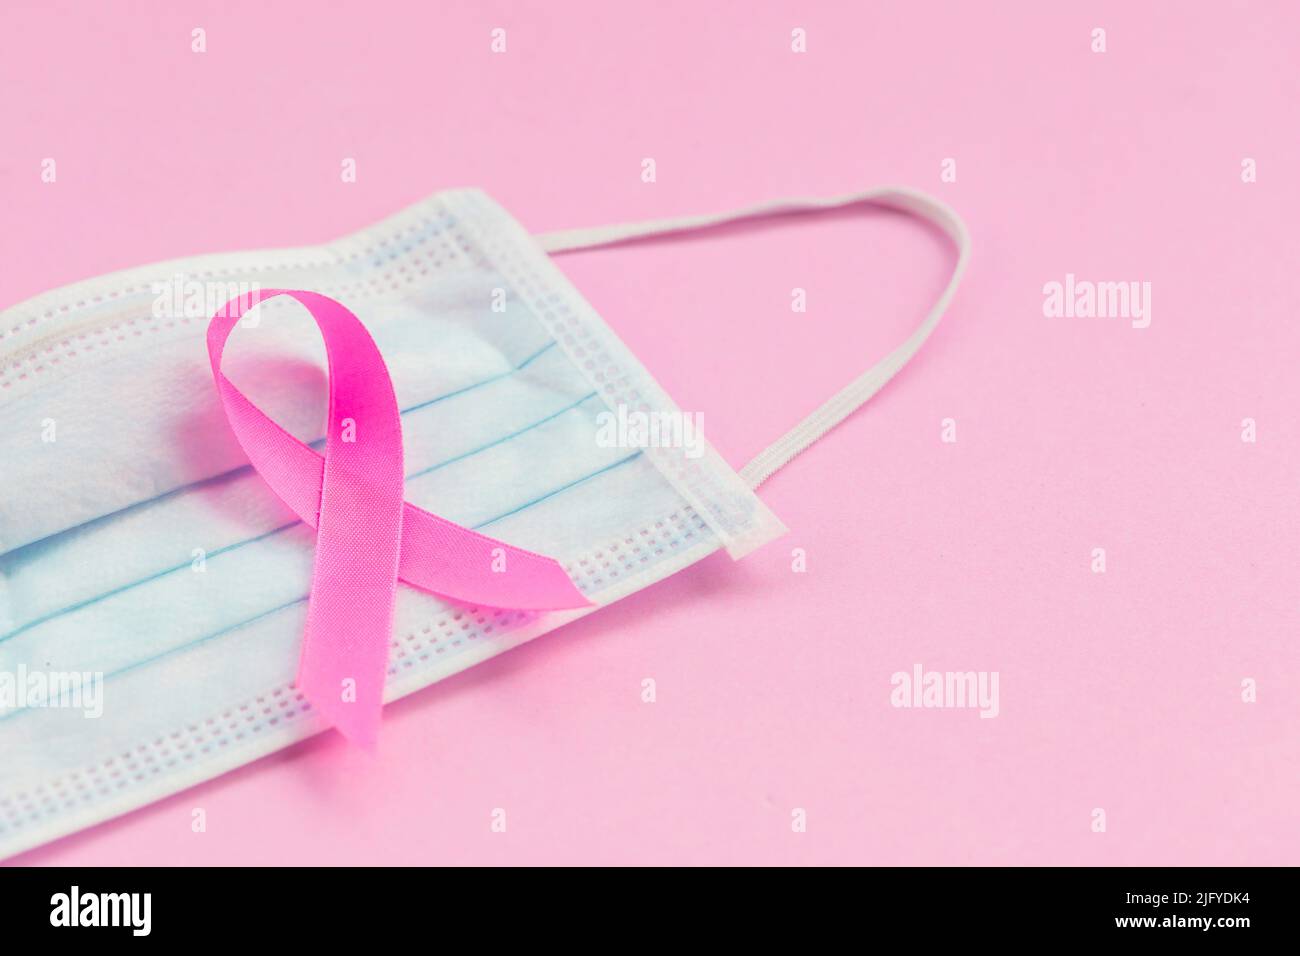 Brustkrebskonzept : Draufsicht rosa Band und Schutzmaske Symbol der Brustkrebs-Kampagne auf rosa Hintergrund Stockfoto